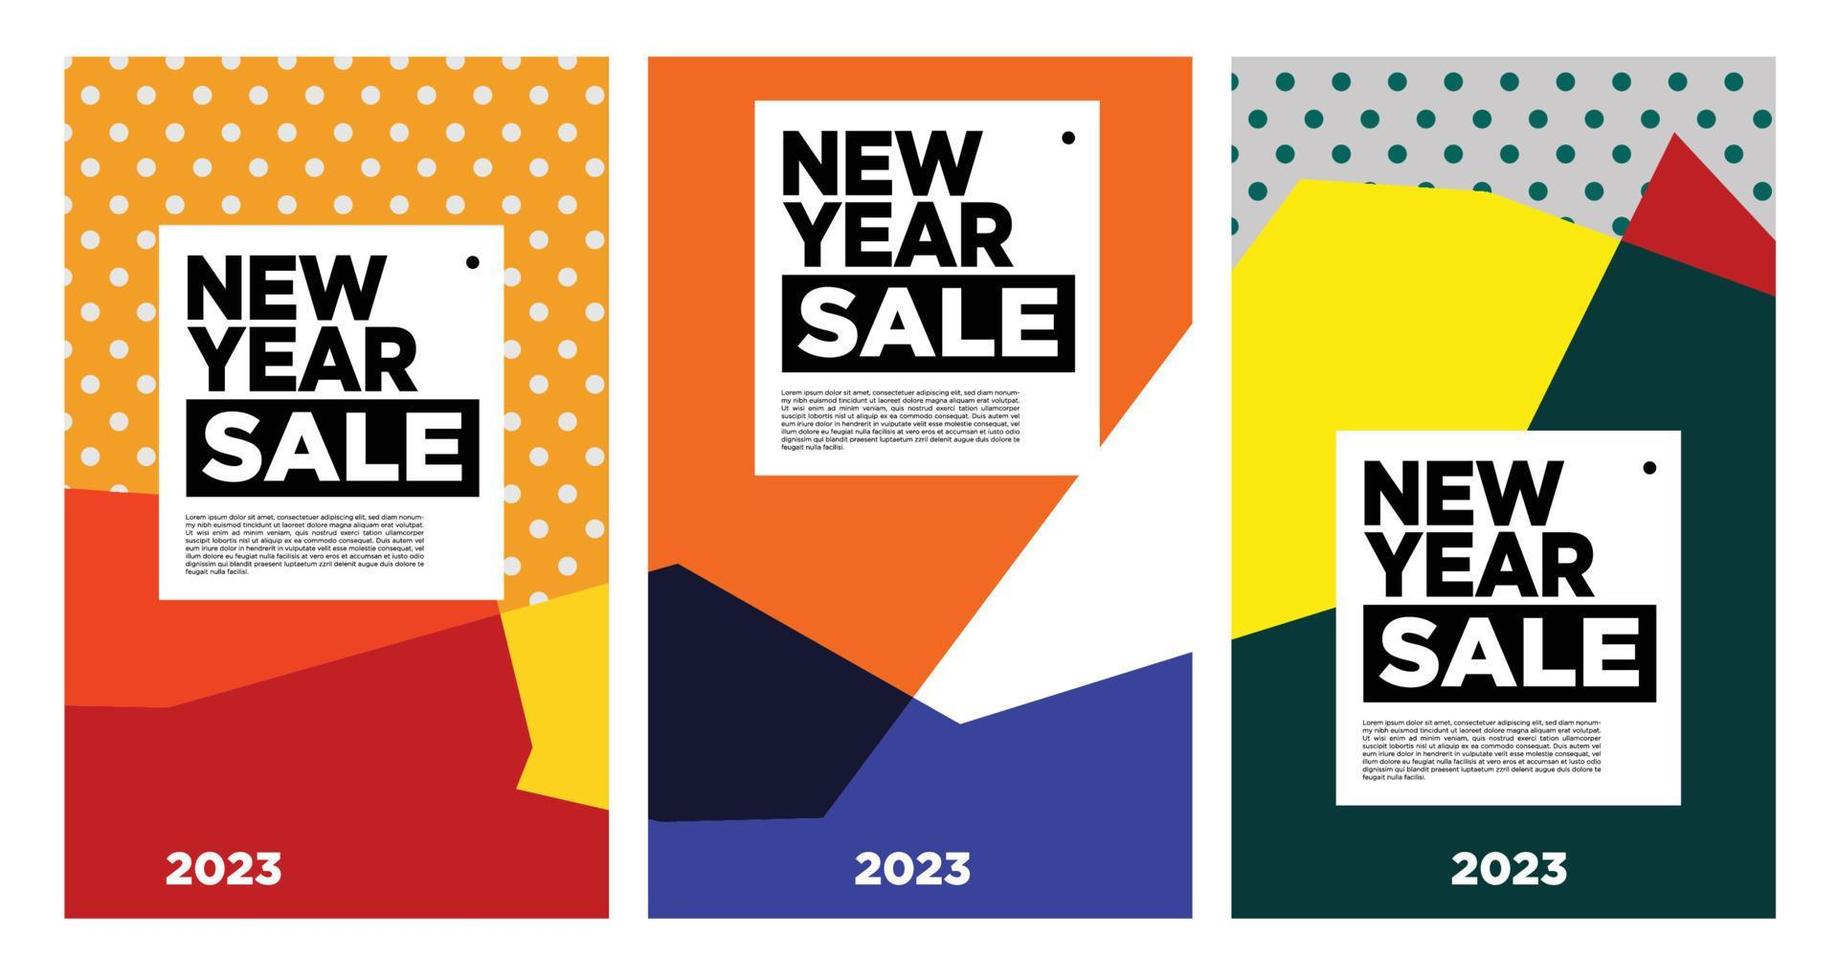 vector venta de año nuevo 2023 con fondo abstracto colorido para publicidad de banner